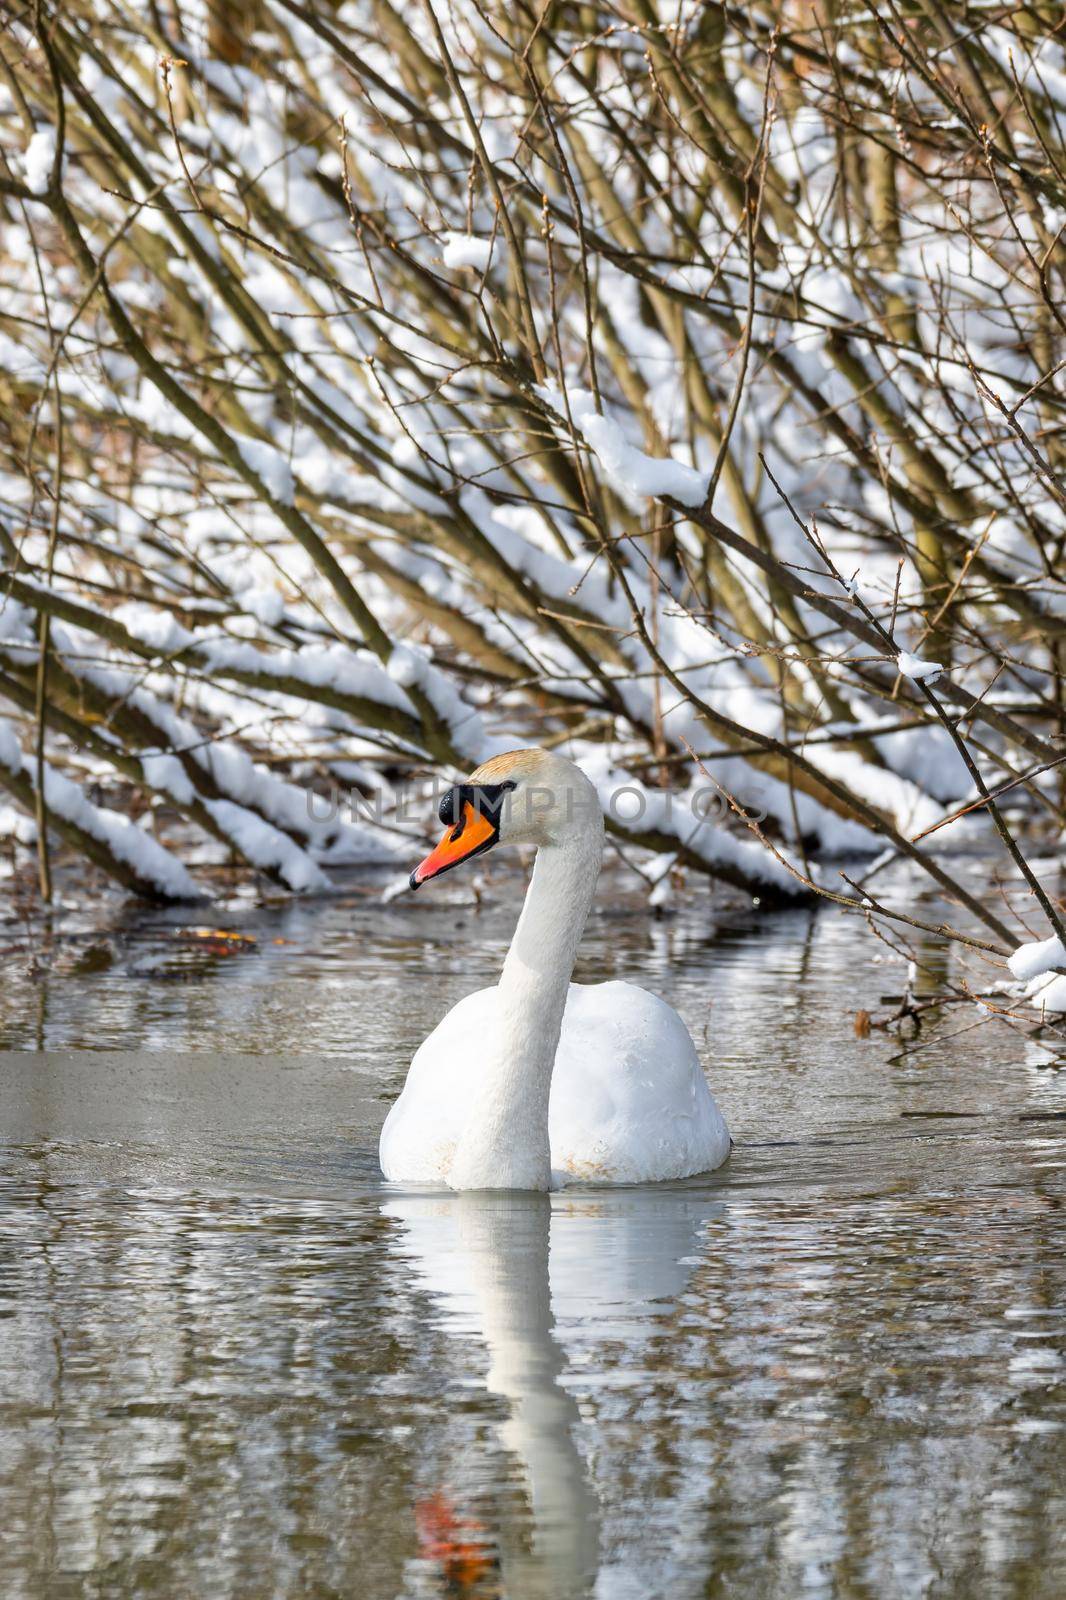 Beauty in nature, mute swan (Cygnus olor) swim in winter on pond on snowy landscape, Czech Republic Europe wildlife